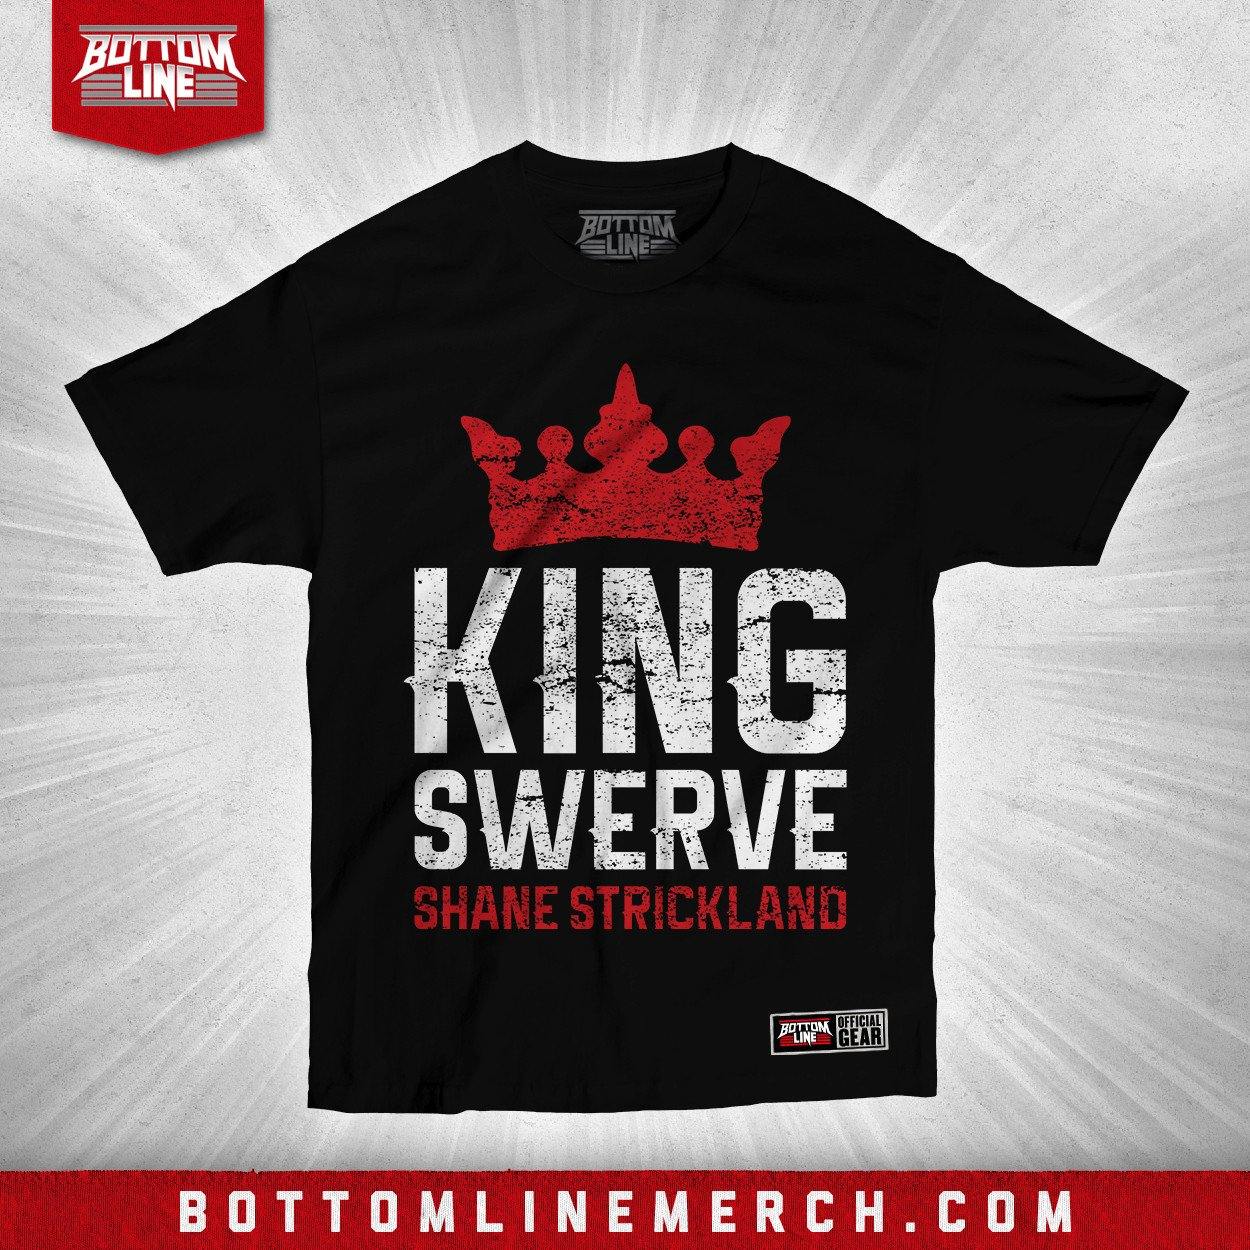 Buy Now – Shane Strickland "King Swerve" Shirt – Wrestler & Wrestling Merch – Bottom Line